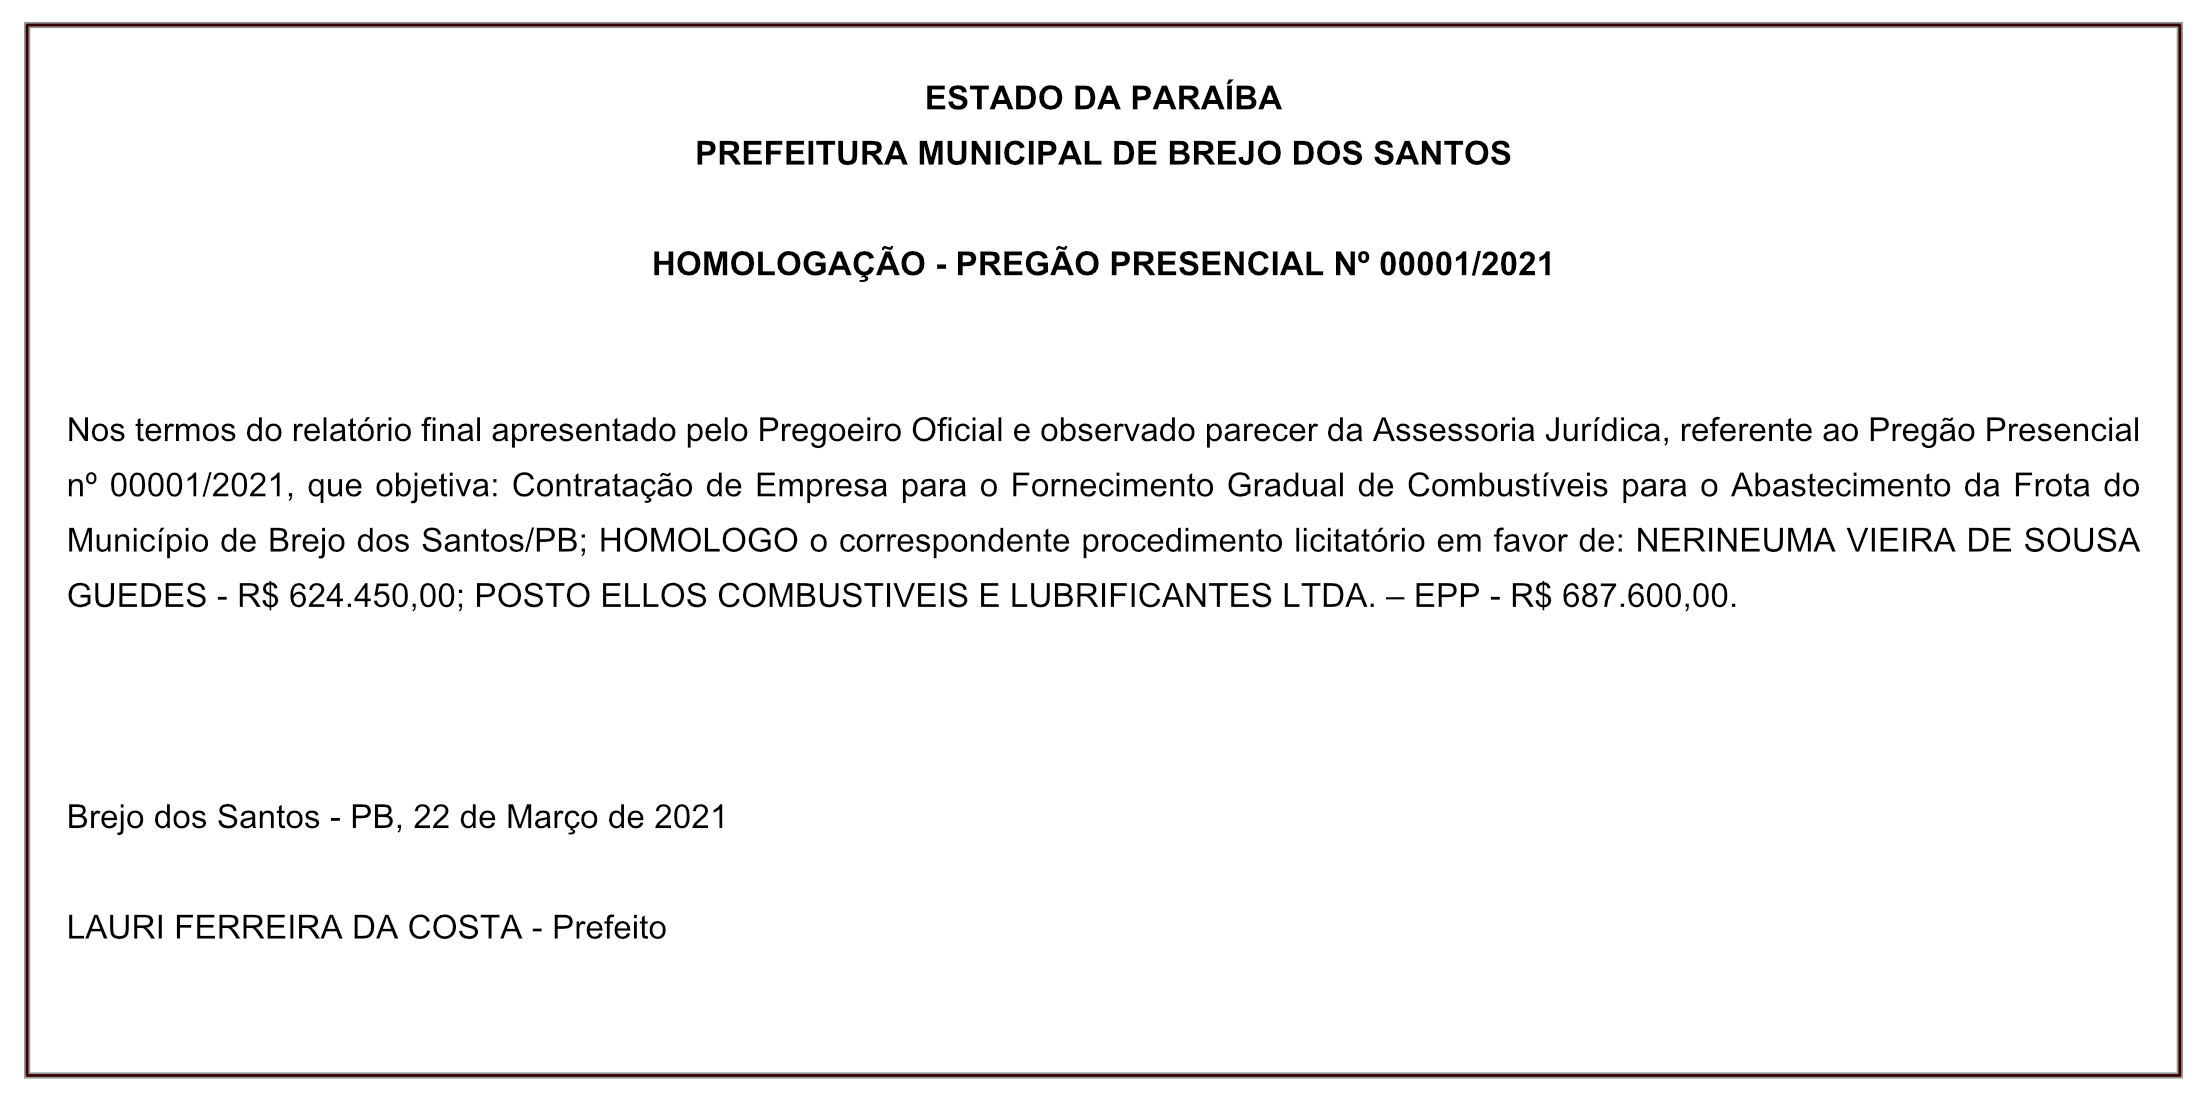 PREFEITURA MUNICIPAL DE BREJO DOS SANTOS – HOMOLOGAÇÃO – PREGÃO PRESENCIAL Nº 00001/2021